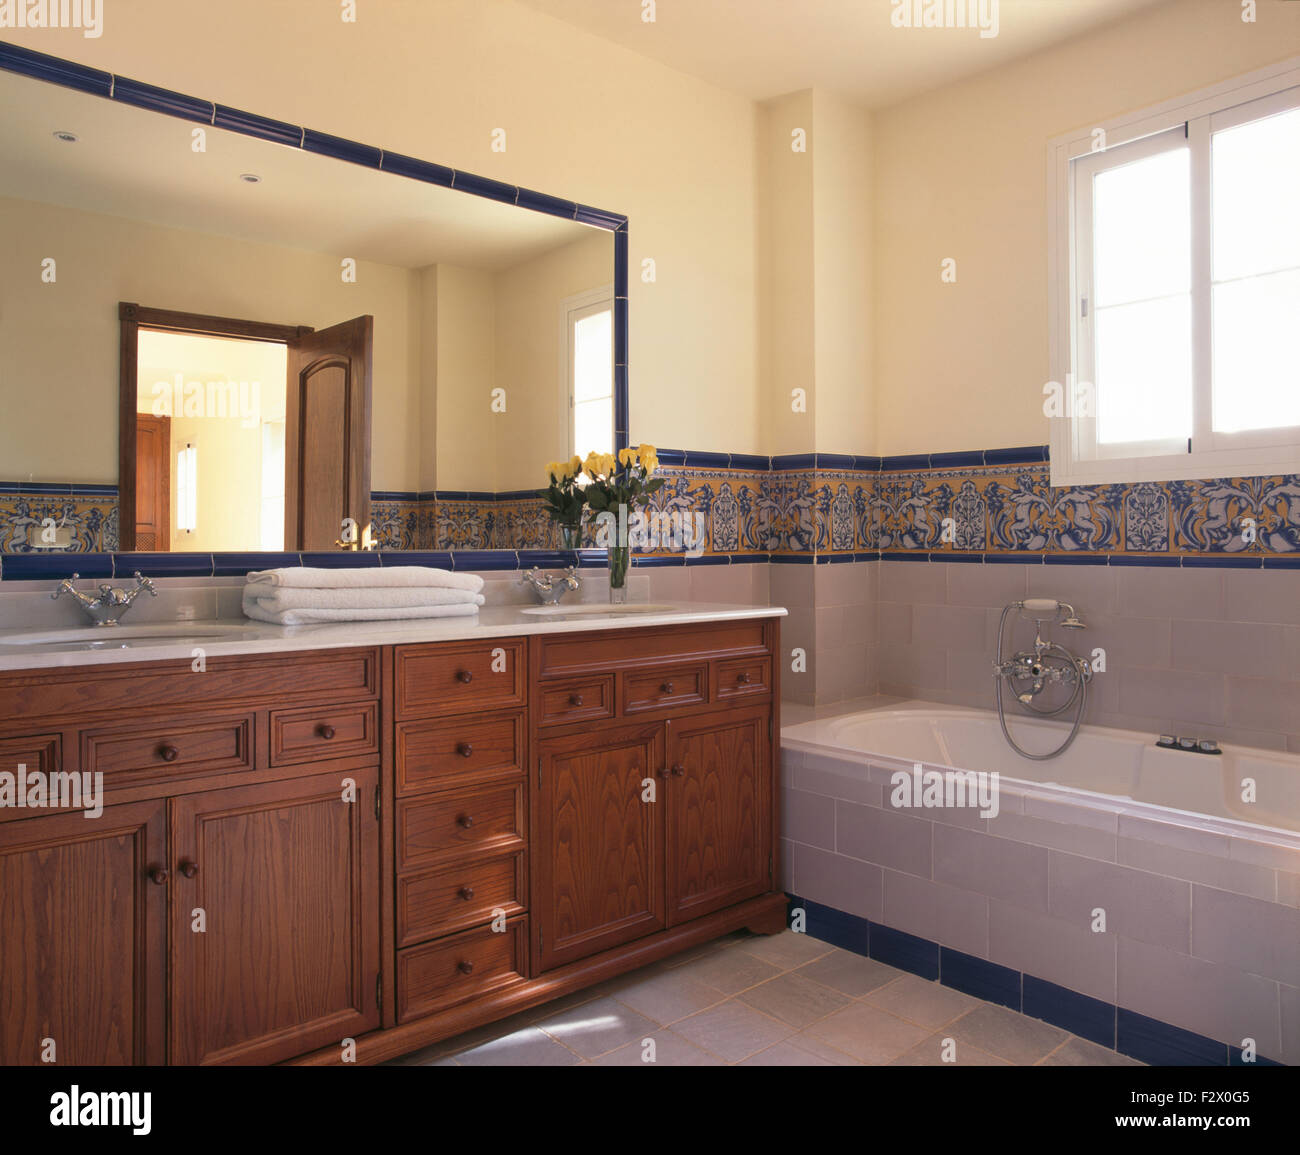 Grande specchio sopra legno unità vanity in spagnolo moderno bagno con un bordo rivestito di piastrelle al di sopra del bagno Foto Stock